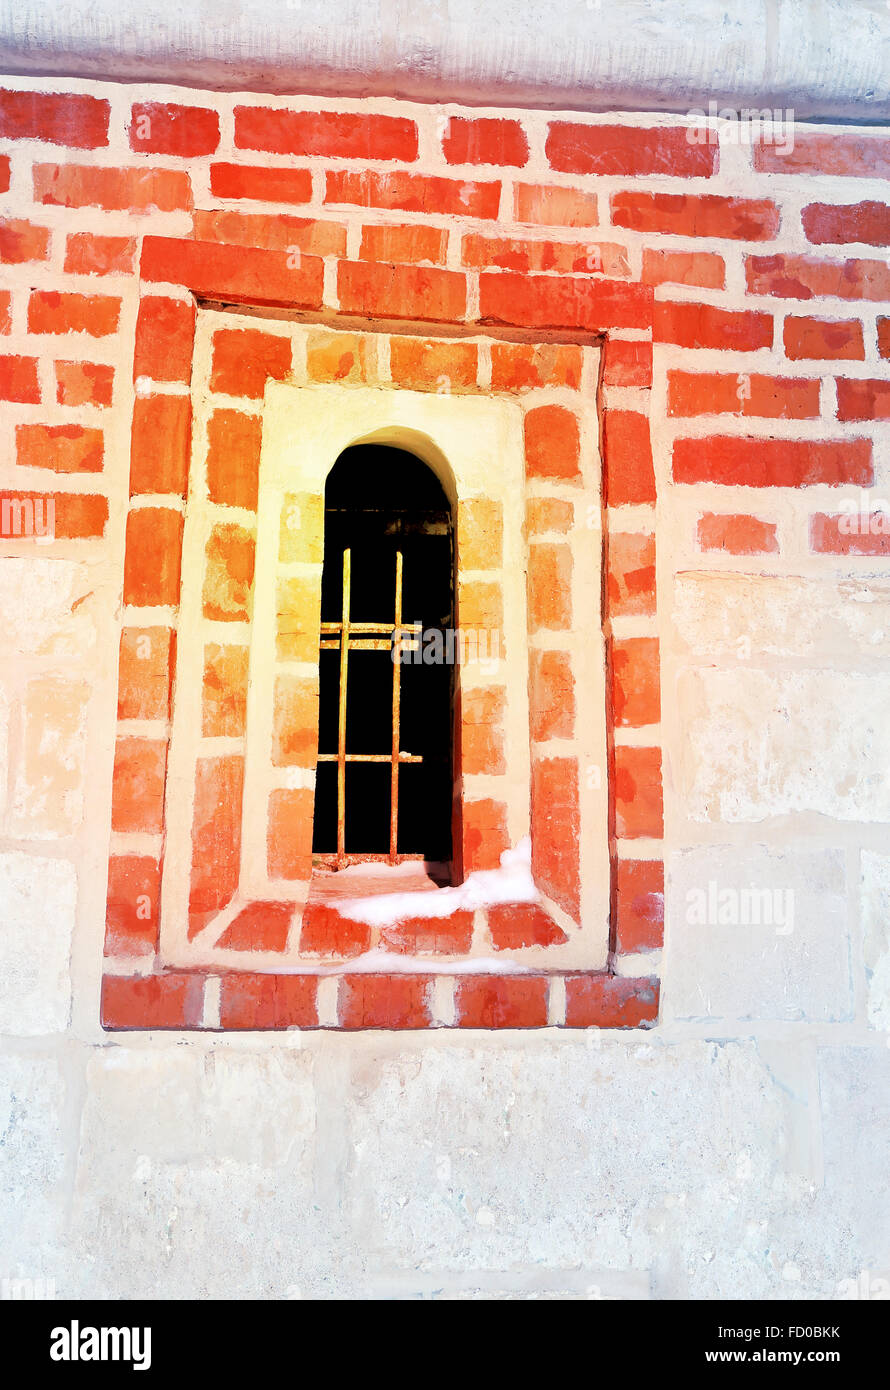 De petites fenêtres dans la forteresse de brique rouge photographié close up Banque D'Images